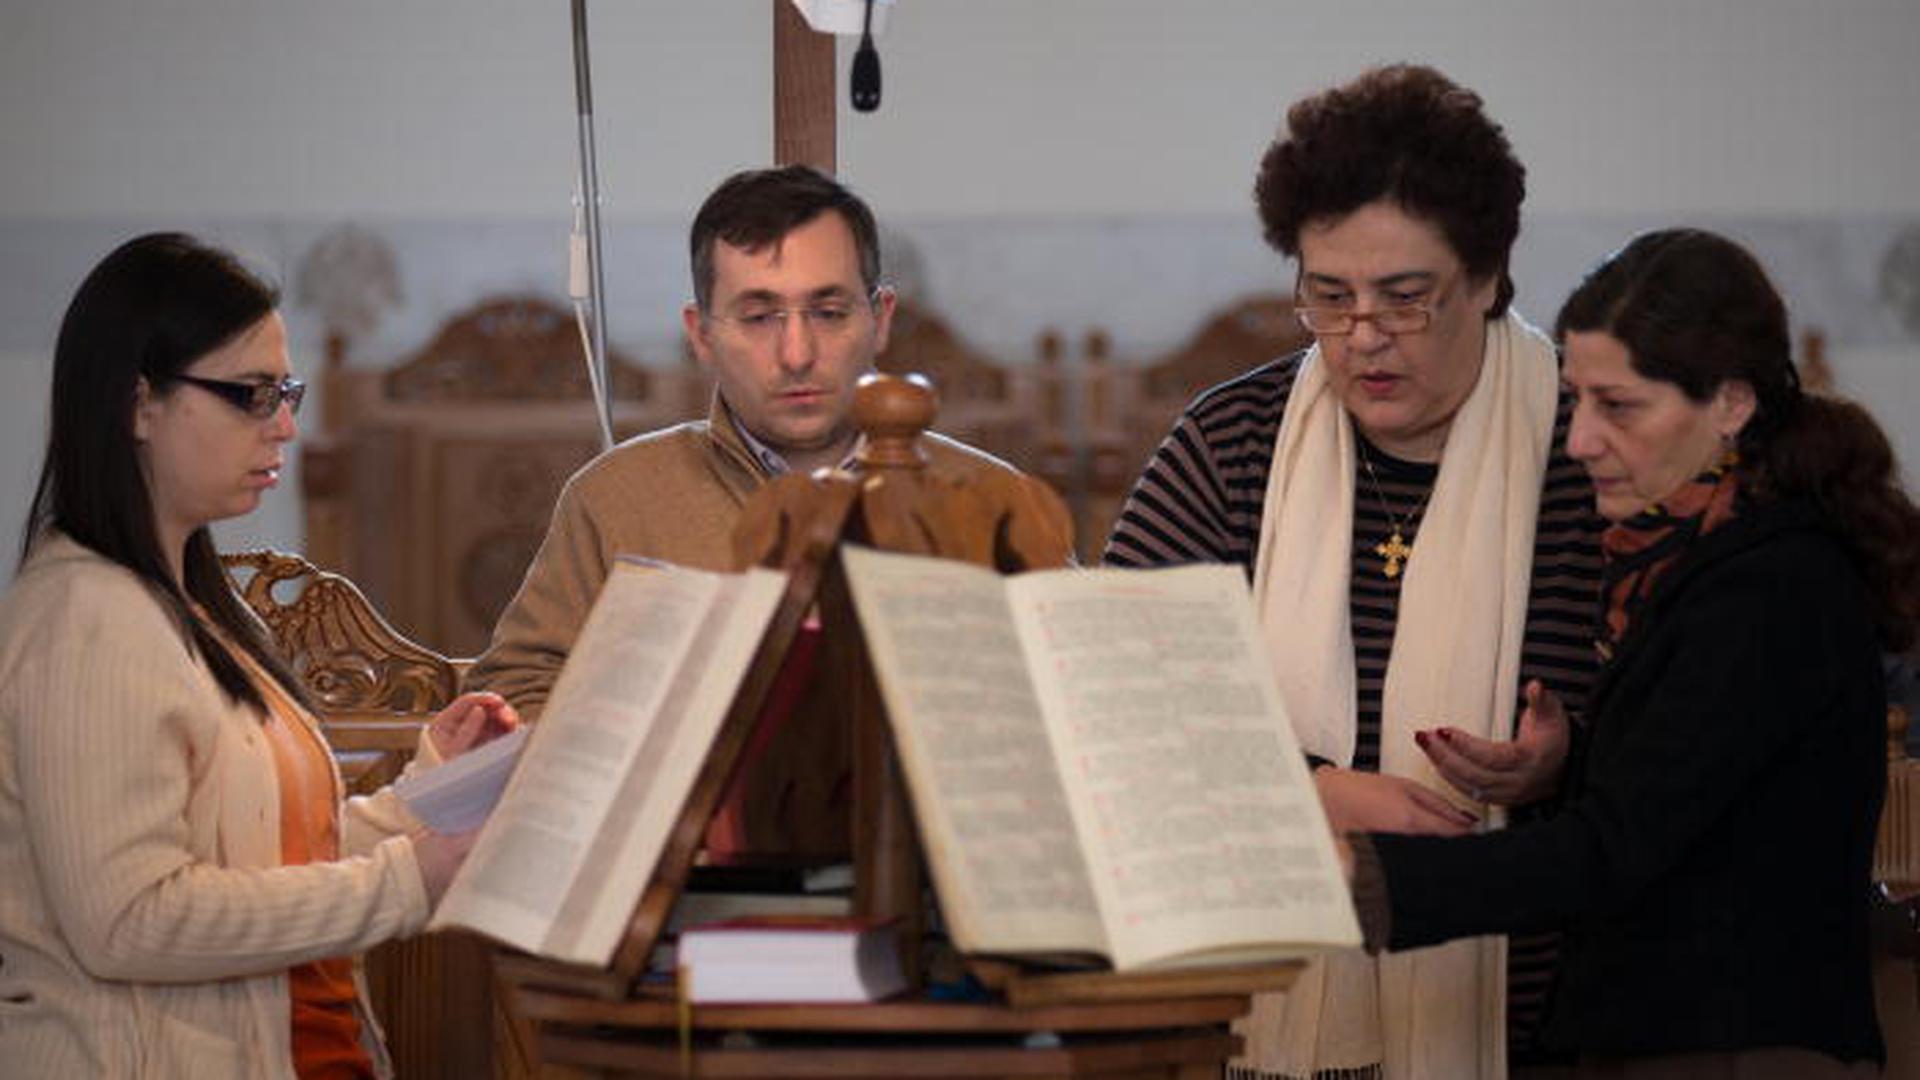 Les chants comme les textes ont toute leur place dans la liturgie orthodoxe